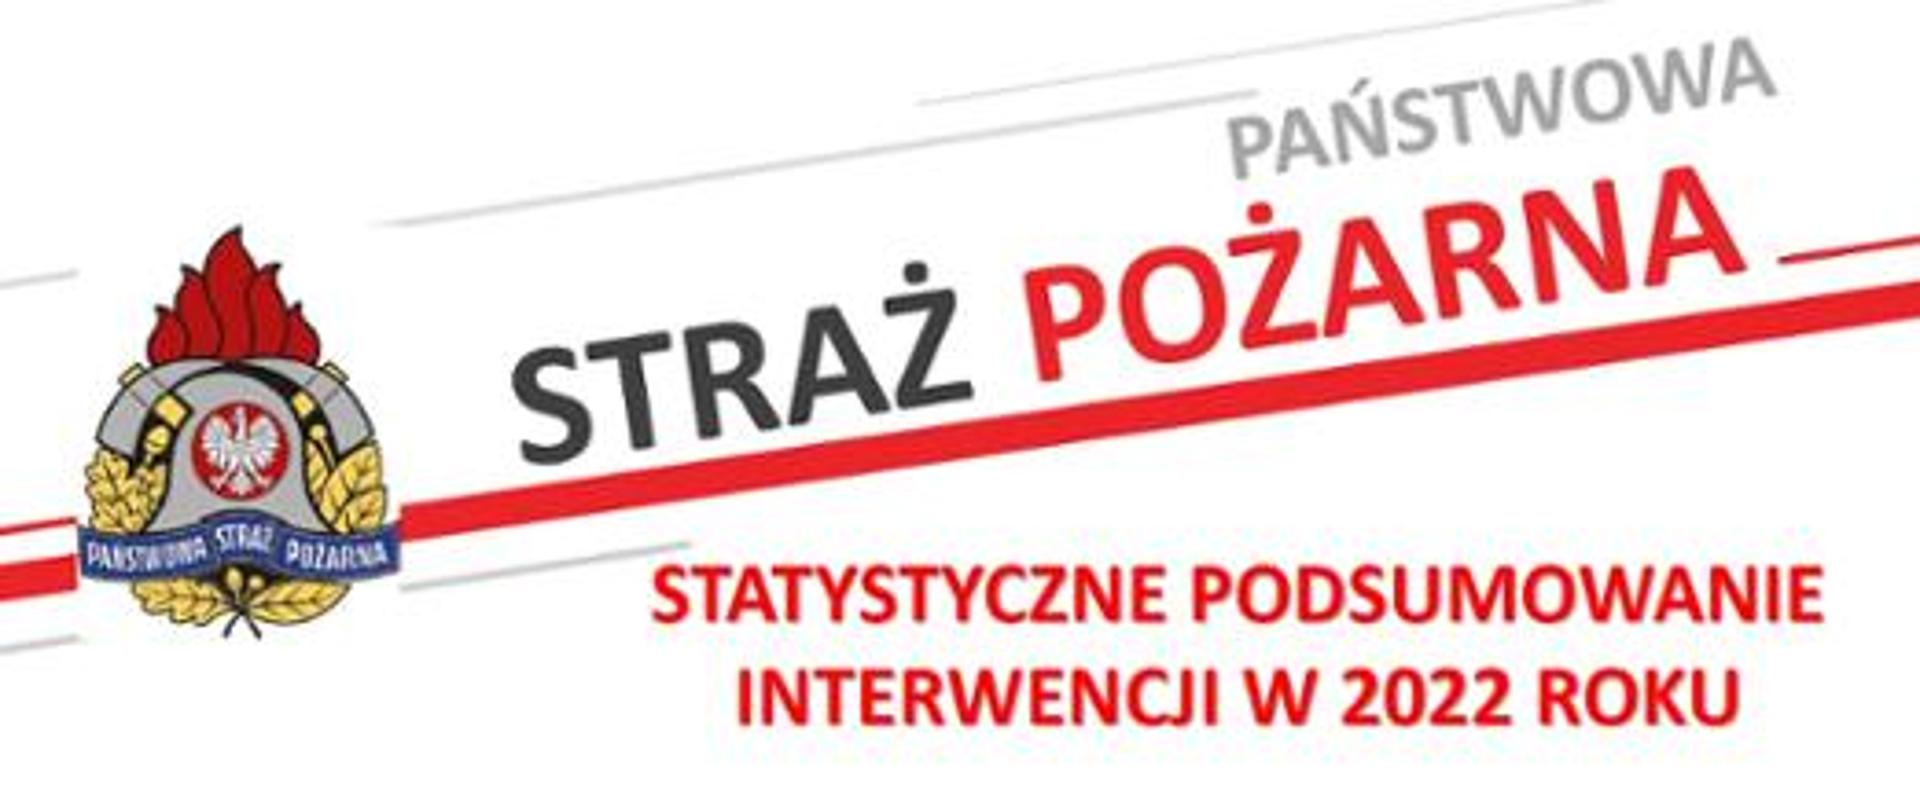 Na zdjęciu logo Państwowej Straży Pożarnej oraz napis Państwowa Straż Pożarna Statystyczne podsumowanie interwencji w 2022 roku